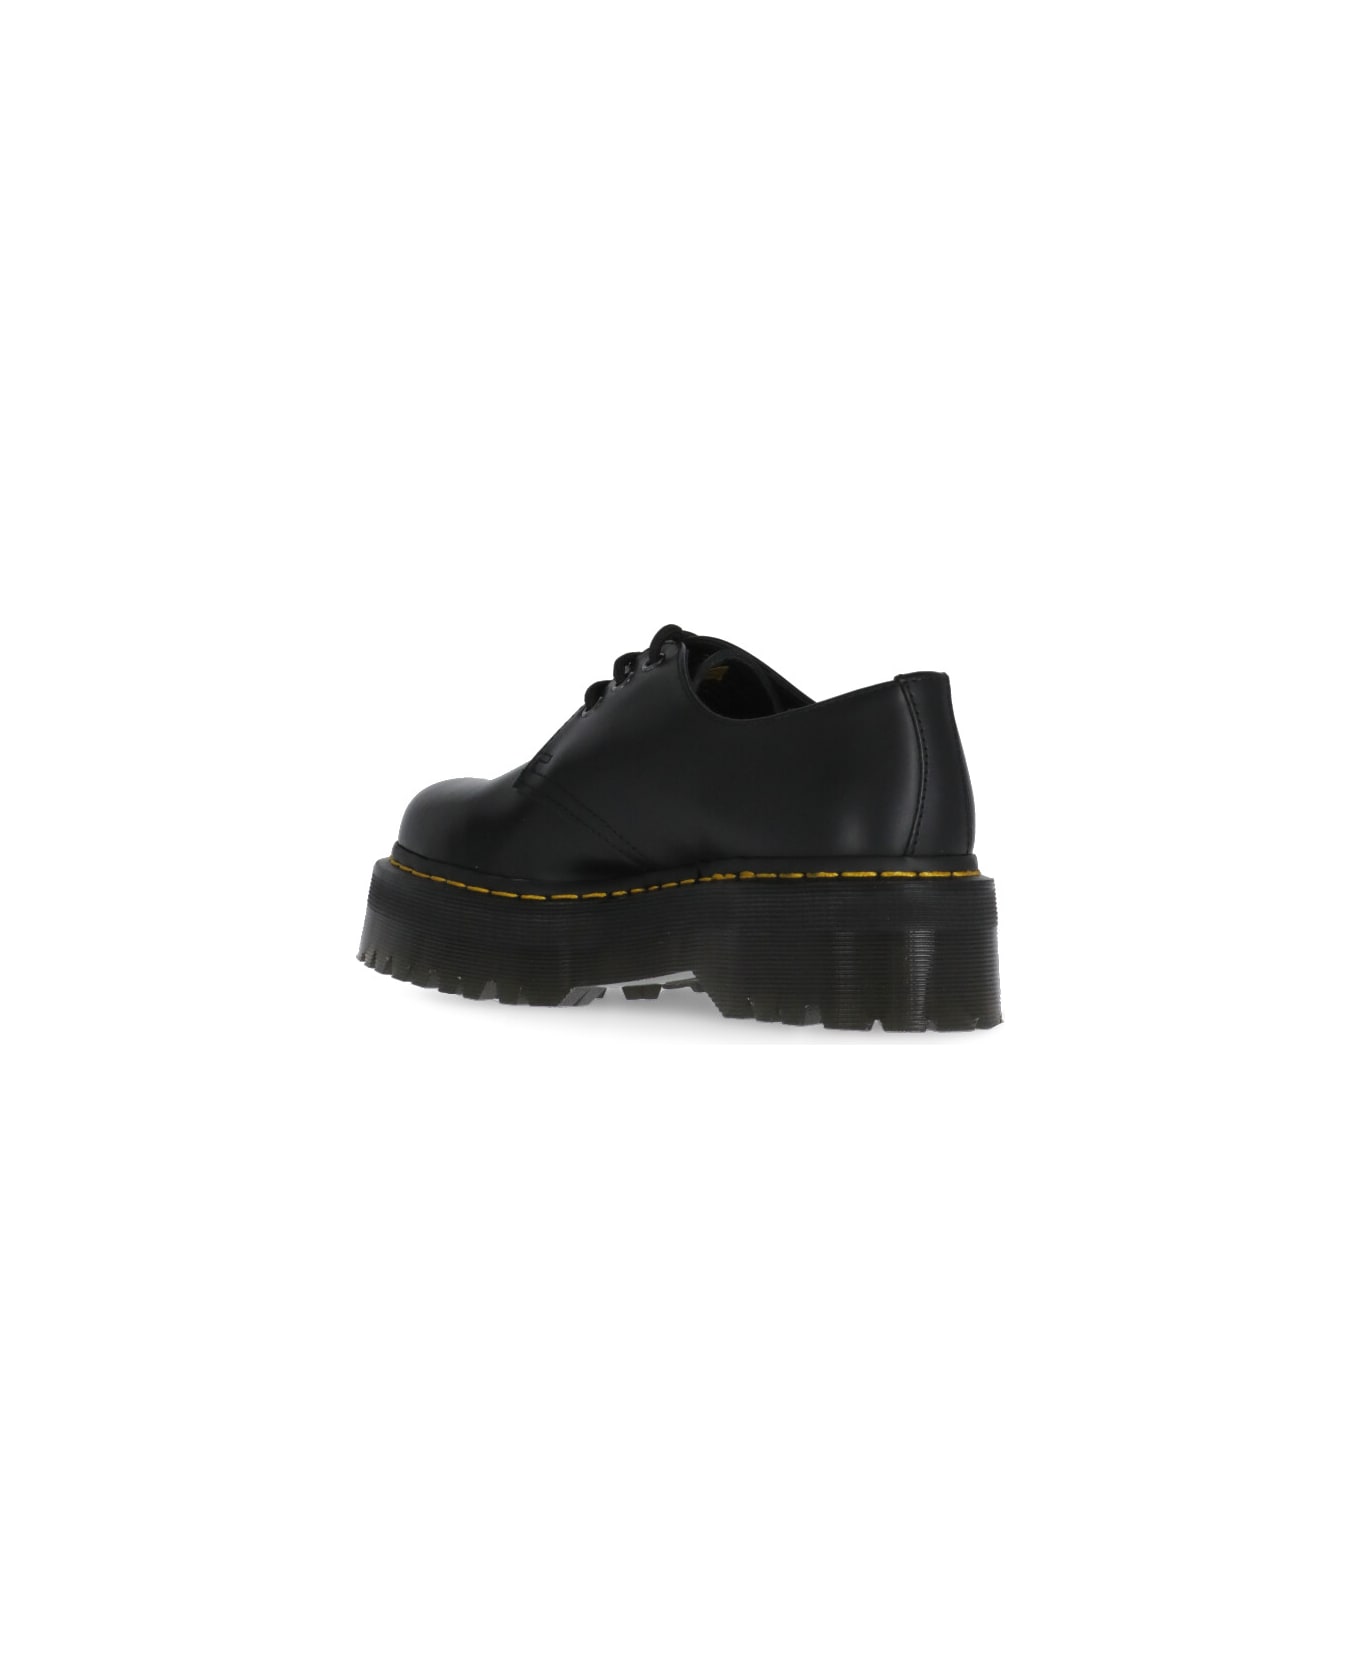 Dr. Martens 1461 Quad Platform Leather Shoes - Black name:464